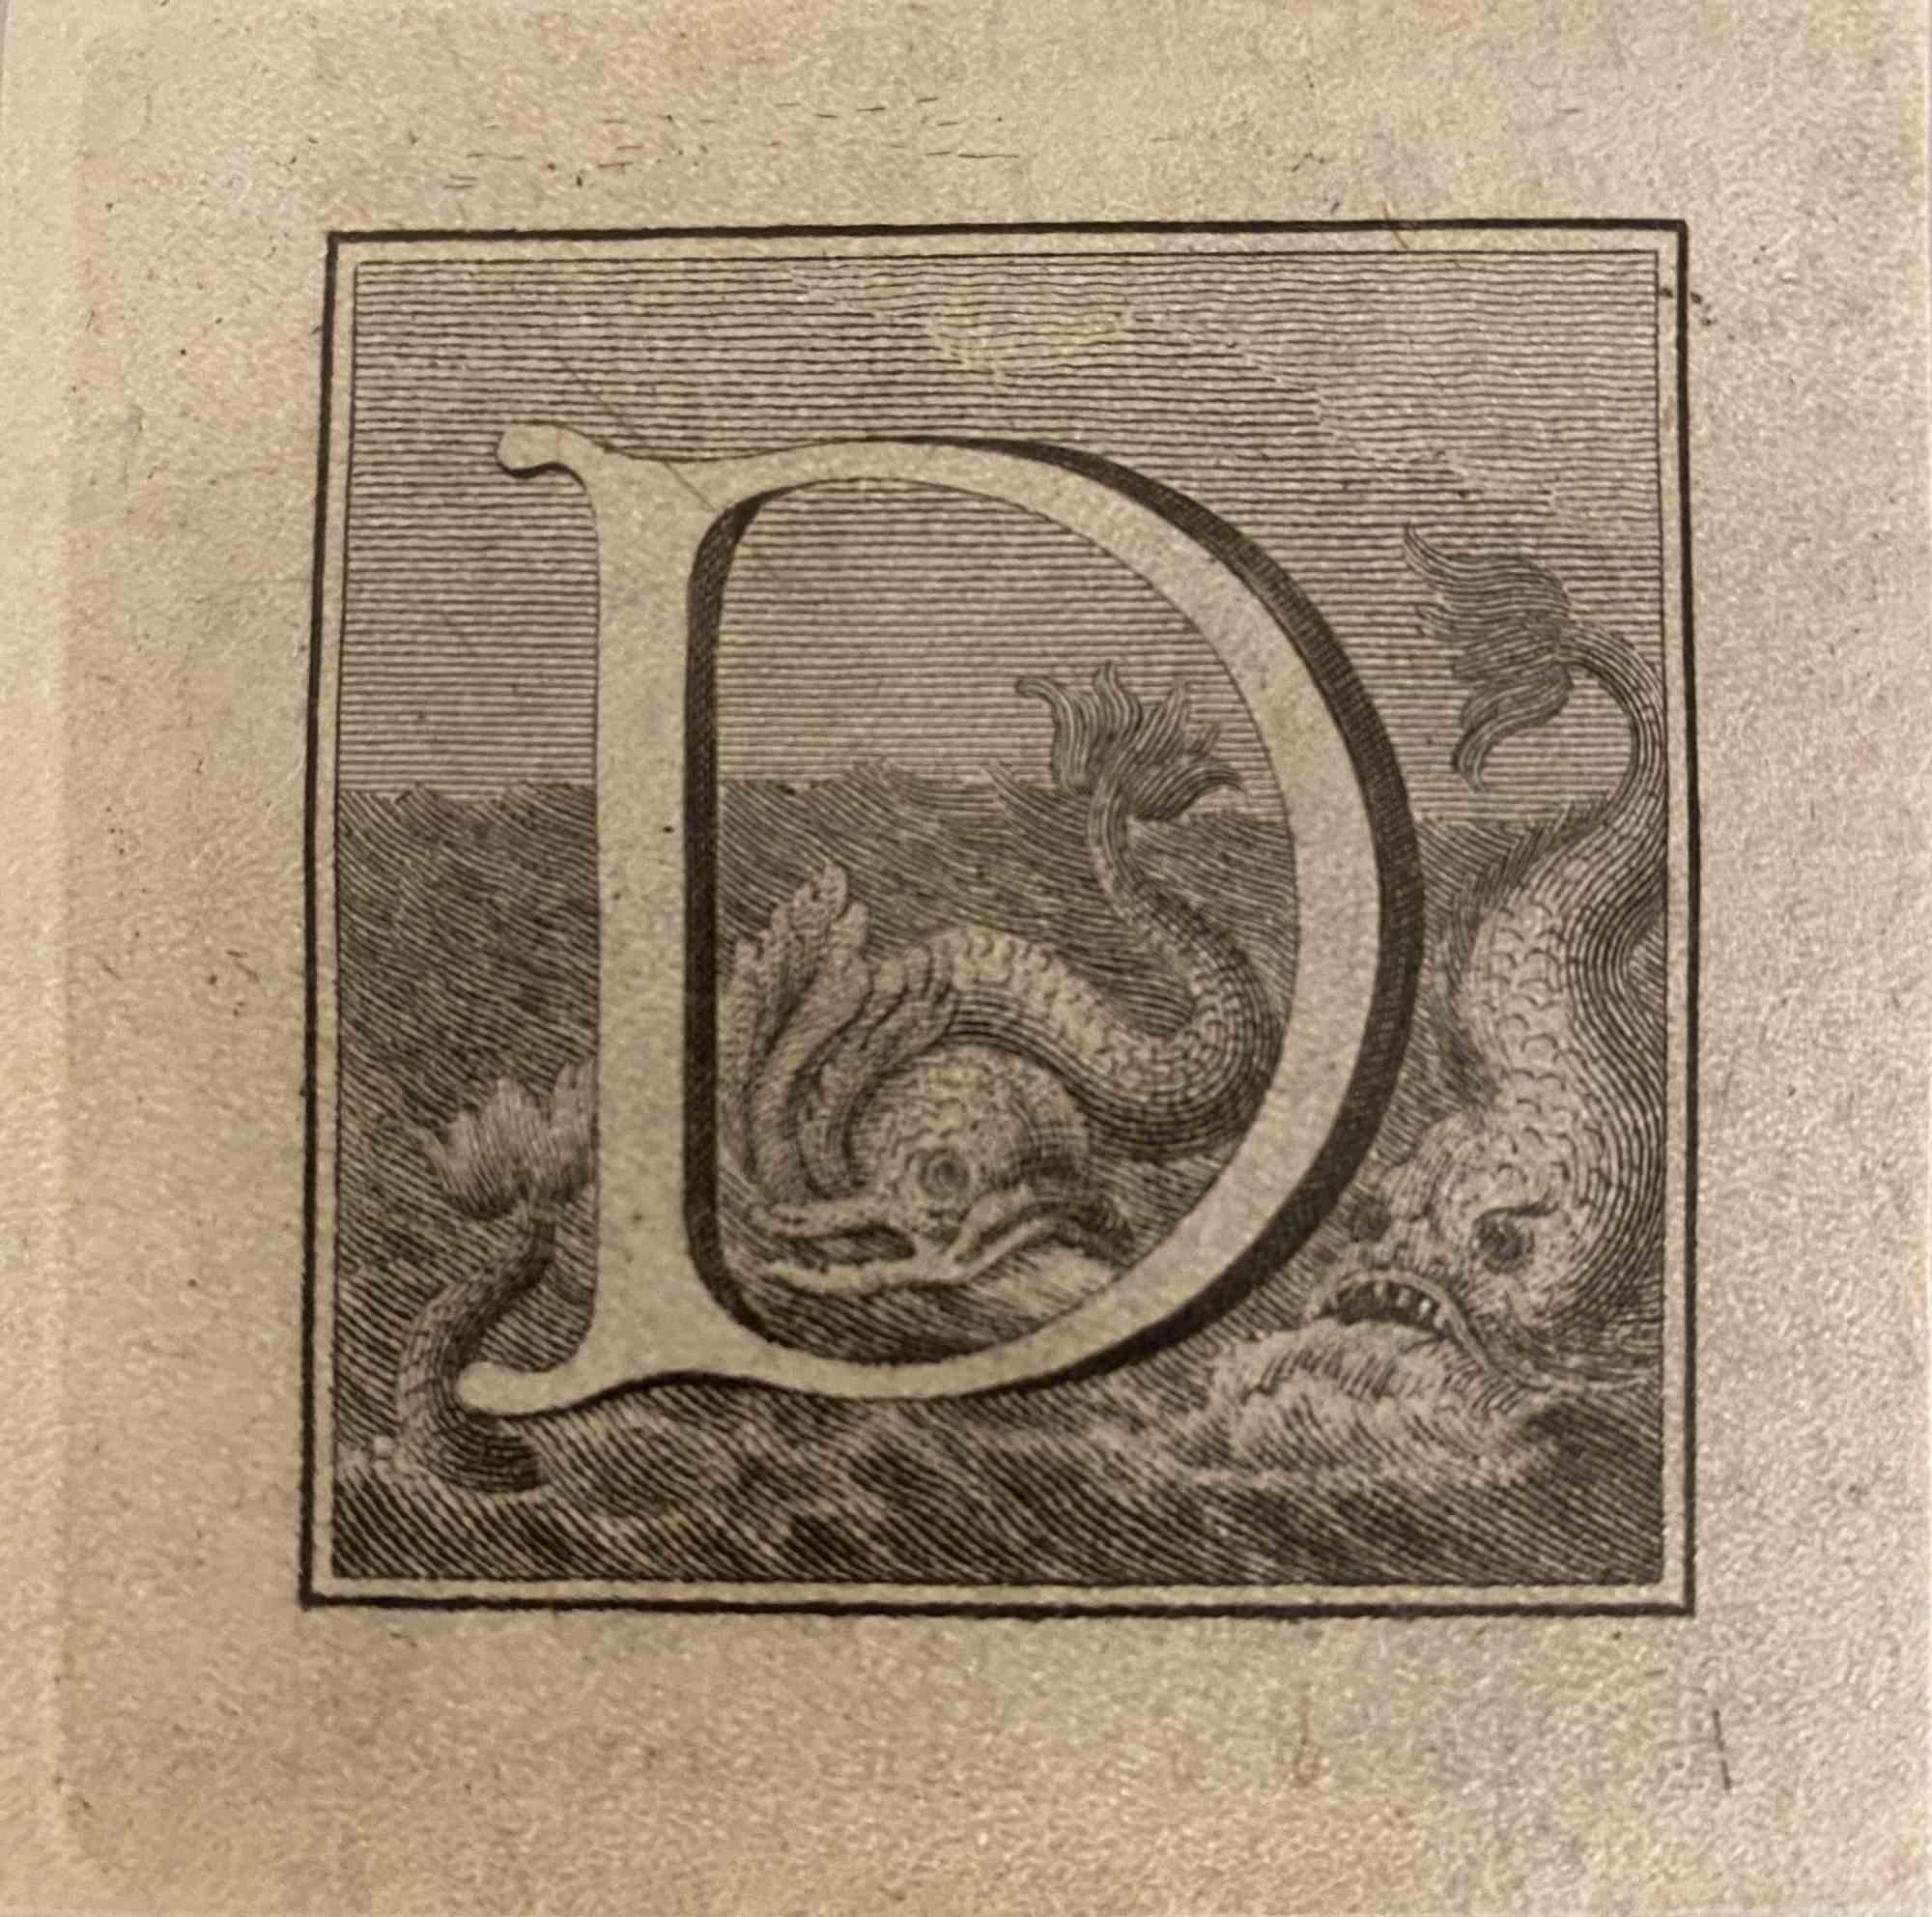 Lettre de l'alphabet D,  de la série "Antiquités d'Herculanum", est une gravure sur papier réalisée par Luigi Vanvitelli au 18ème siècle.

Bon état avec quelques petites rousseurs.

La gravure appartient à la suite d'estampes "Antiquités